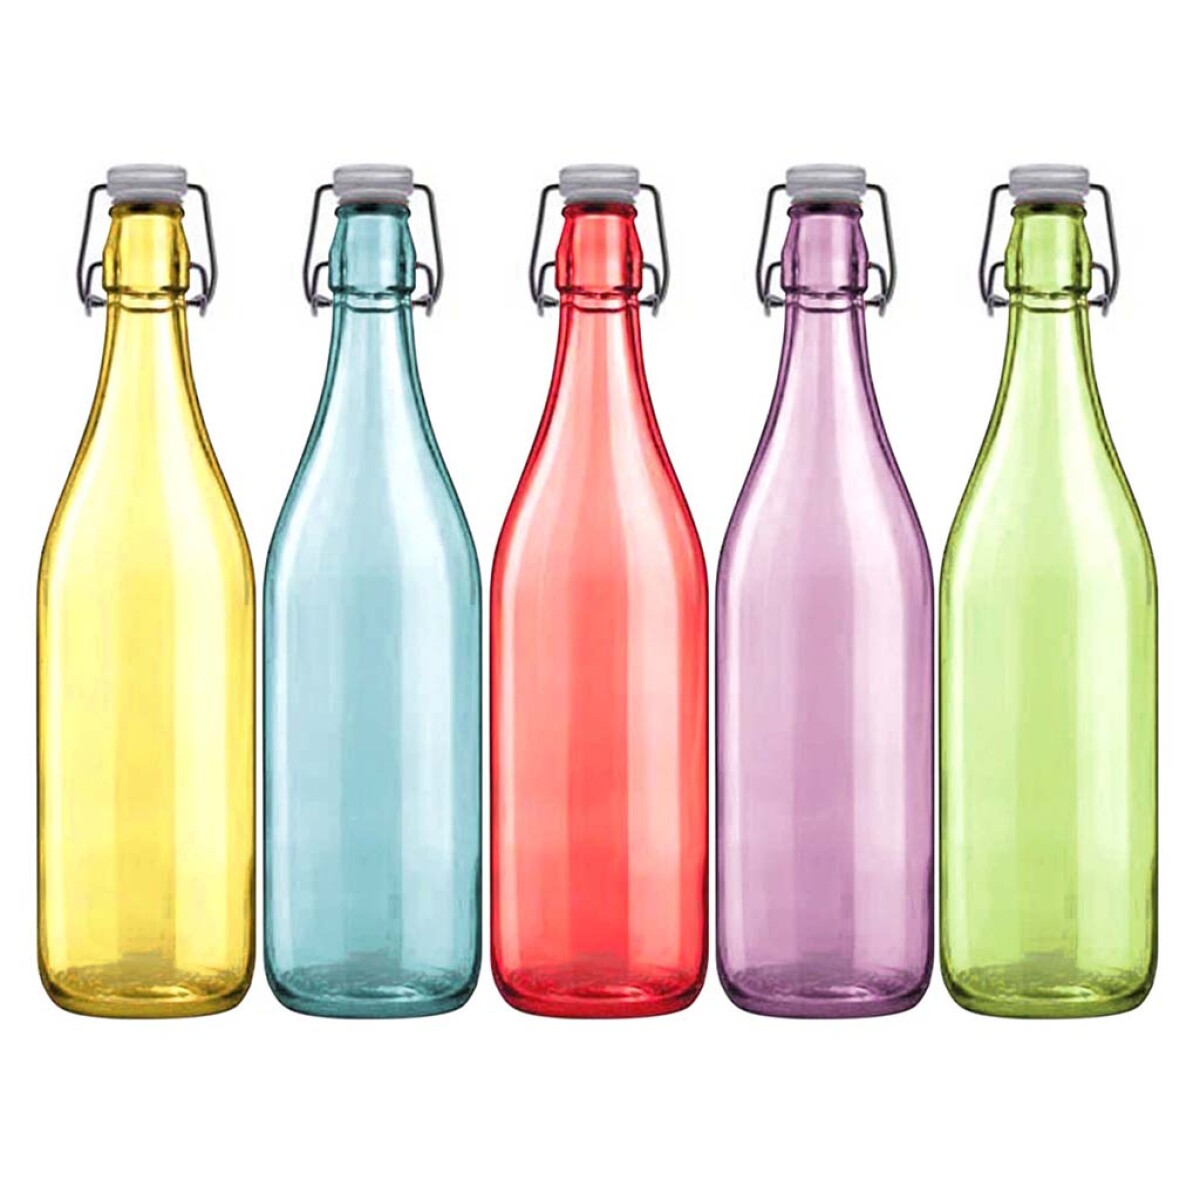 Botella Vidrio 1/2 lt Colores Tapa Hermetica - 000 